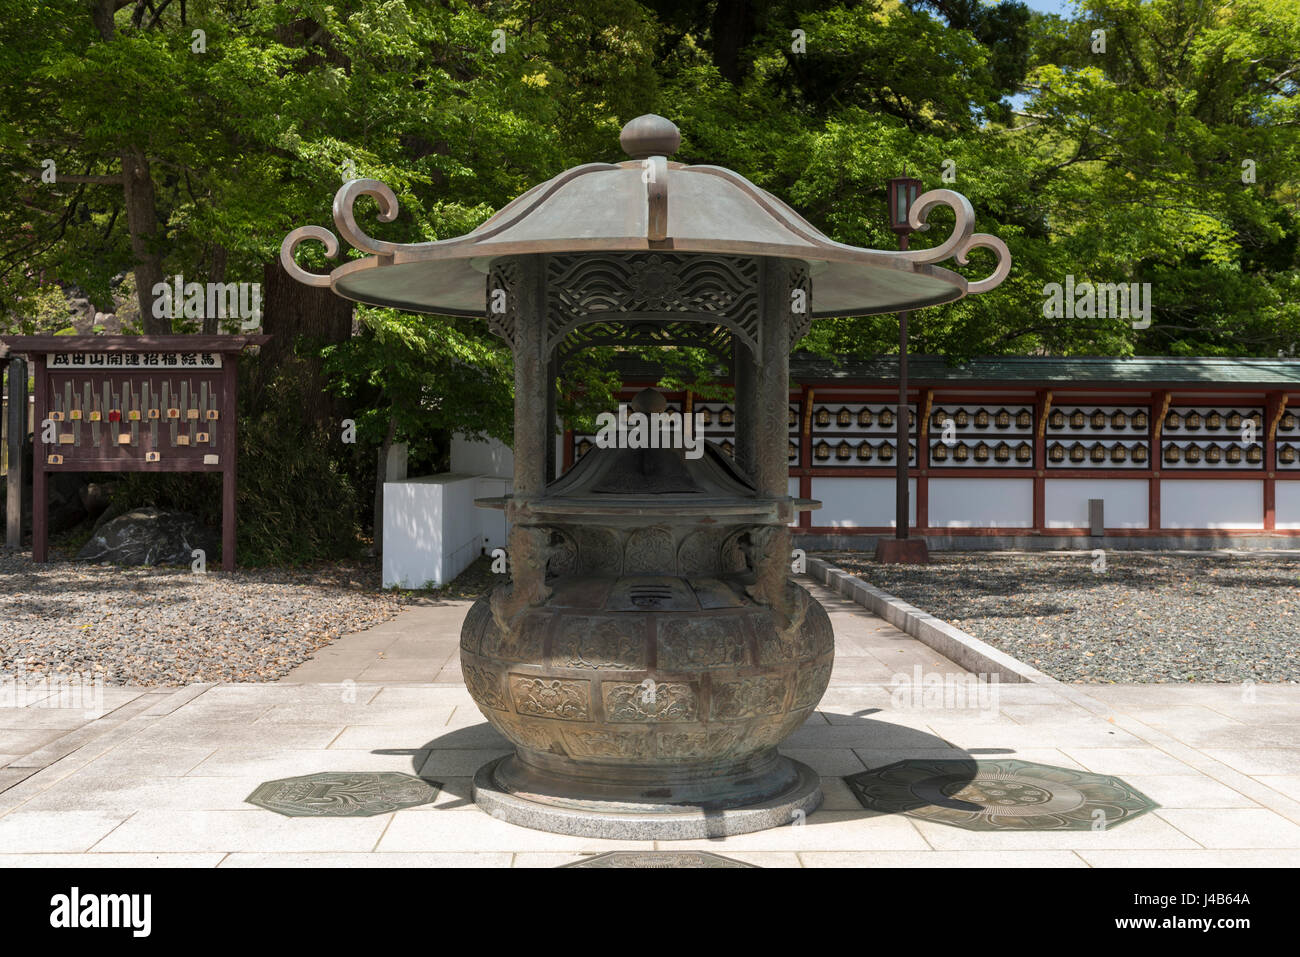 L'épargne la benne de Naritasan Shinshoji temple de Narita, au Japon. Fait partie du Temple de la secte Shingon Chisan du bouddhisme Banque D'Images